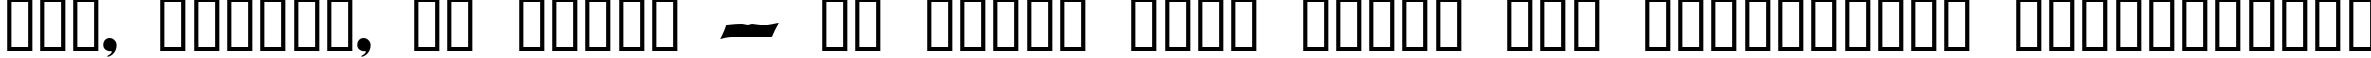 Пример написания шрифтом Domino Regular текста на украинском